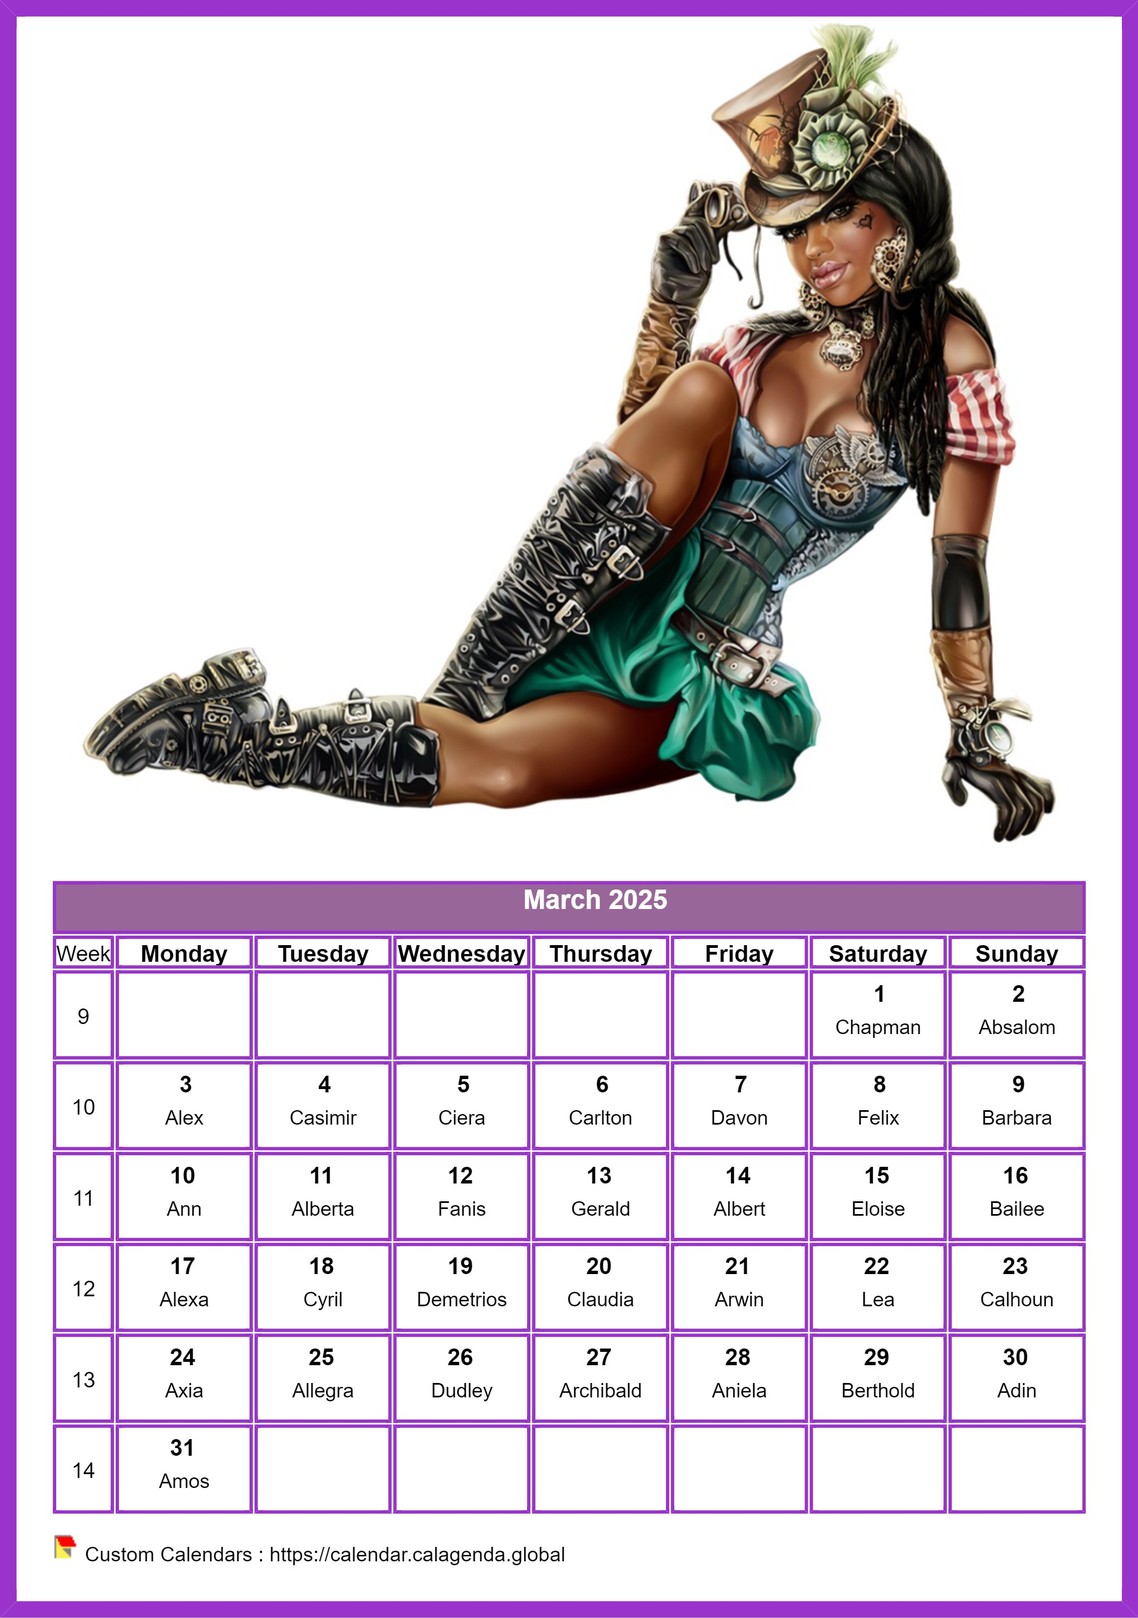 Calendar March 2025 women